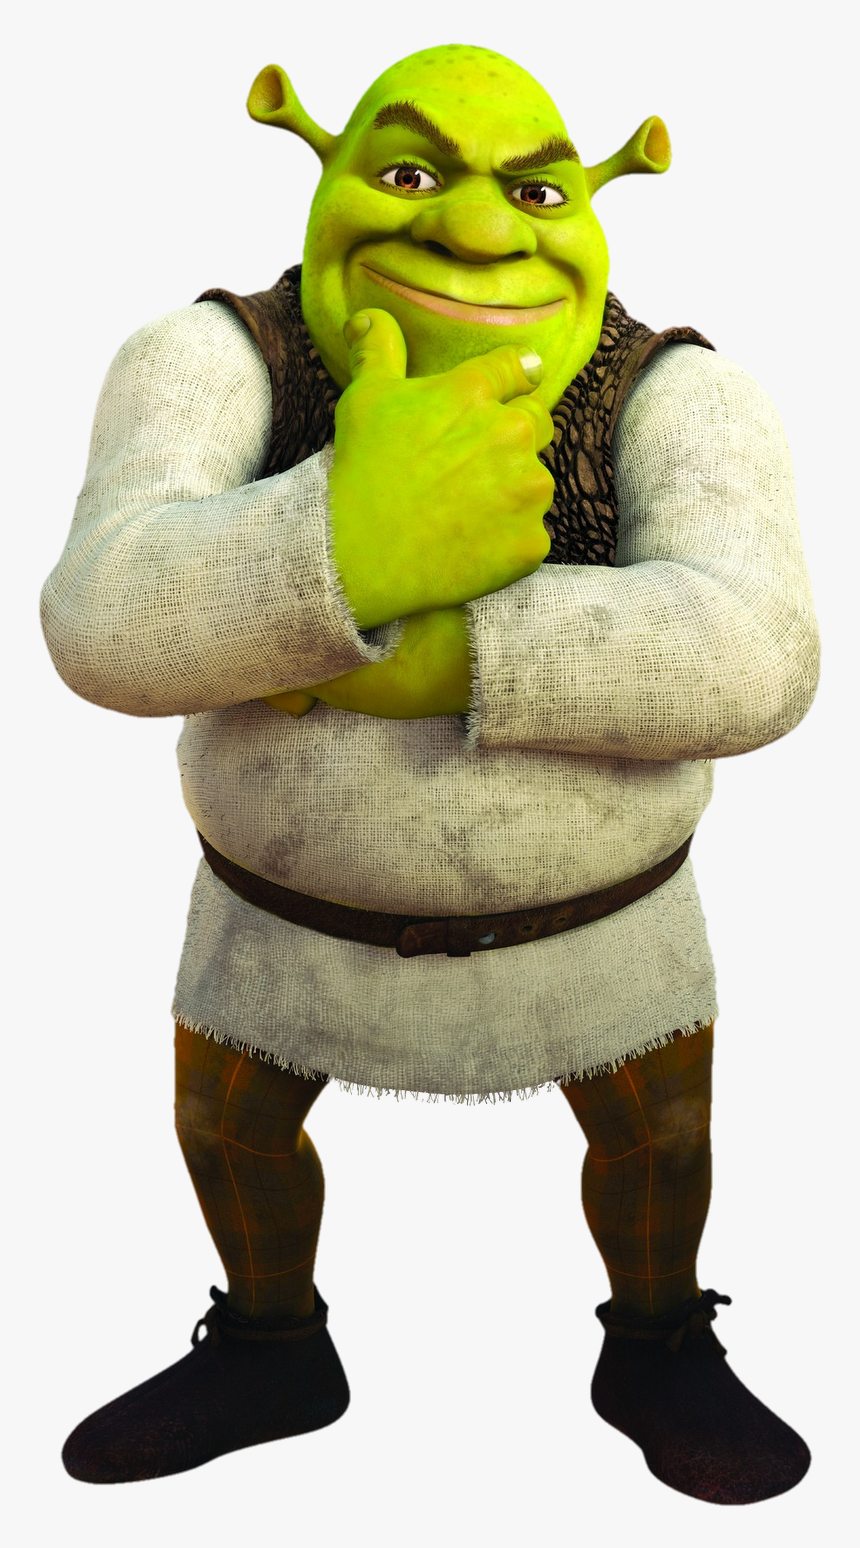 Shrek Png Image Hd - Shrek Transparent Background, Png Download, Free Download